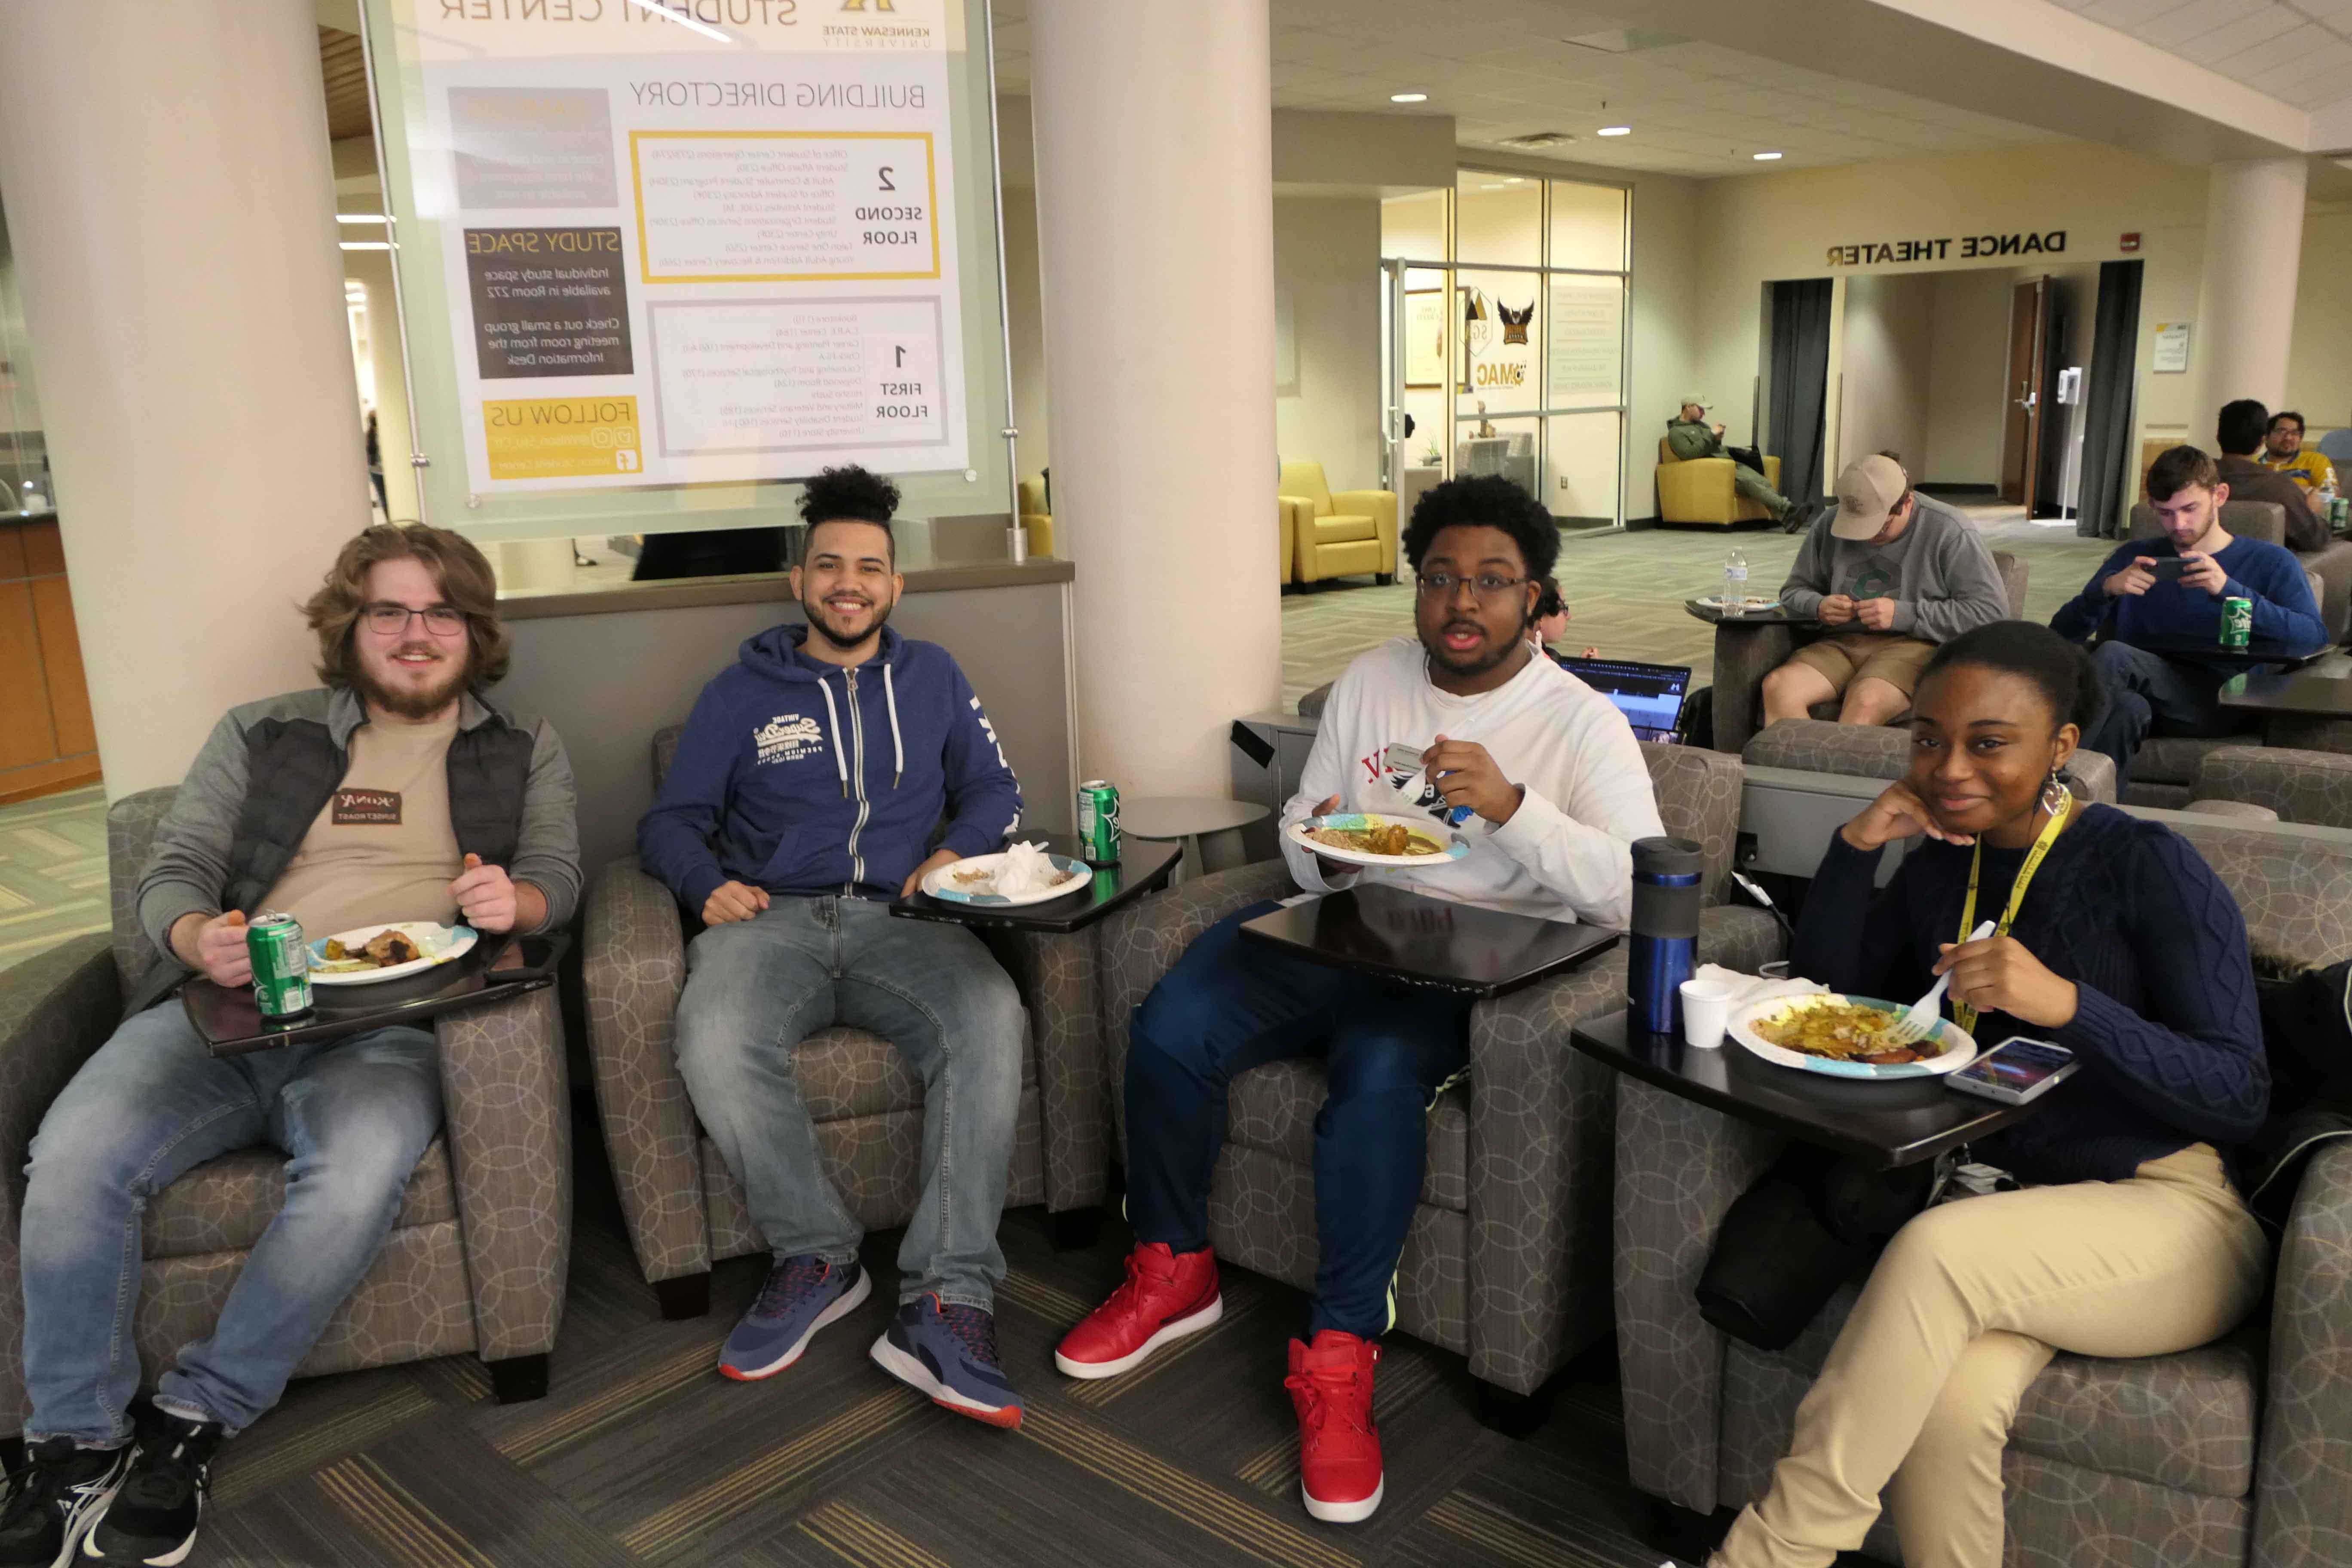  一群ksu学生懒洋洋地坐在椅子上，吃着一盘食物.